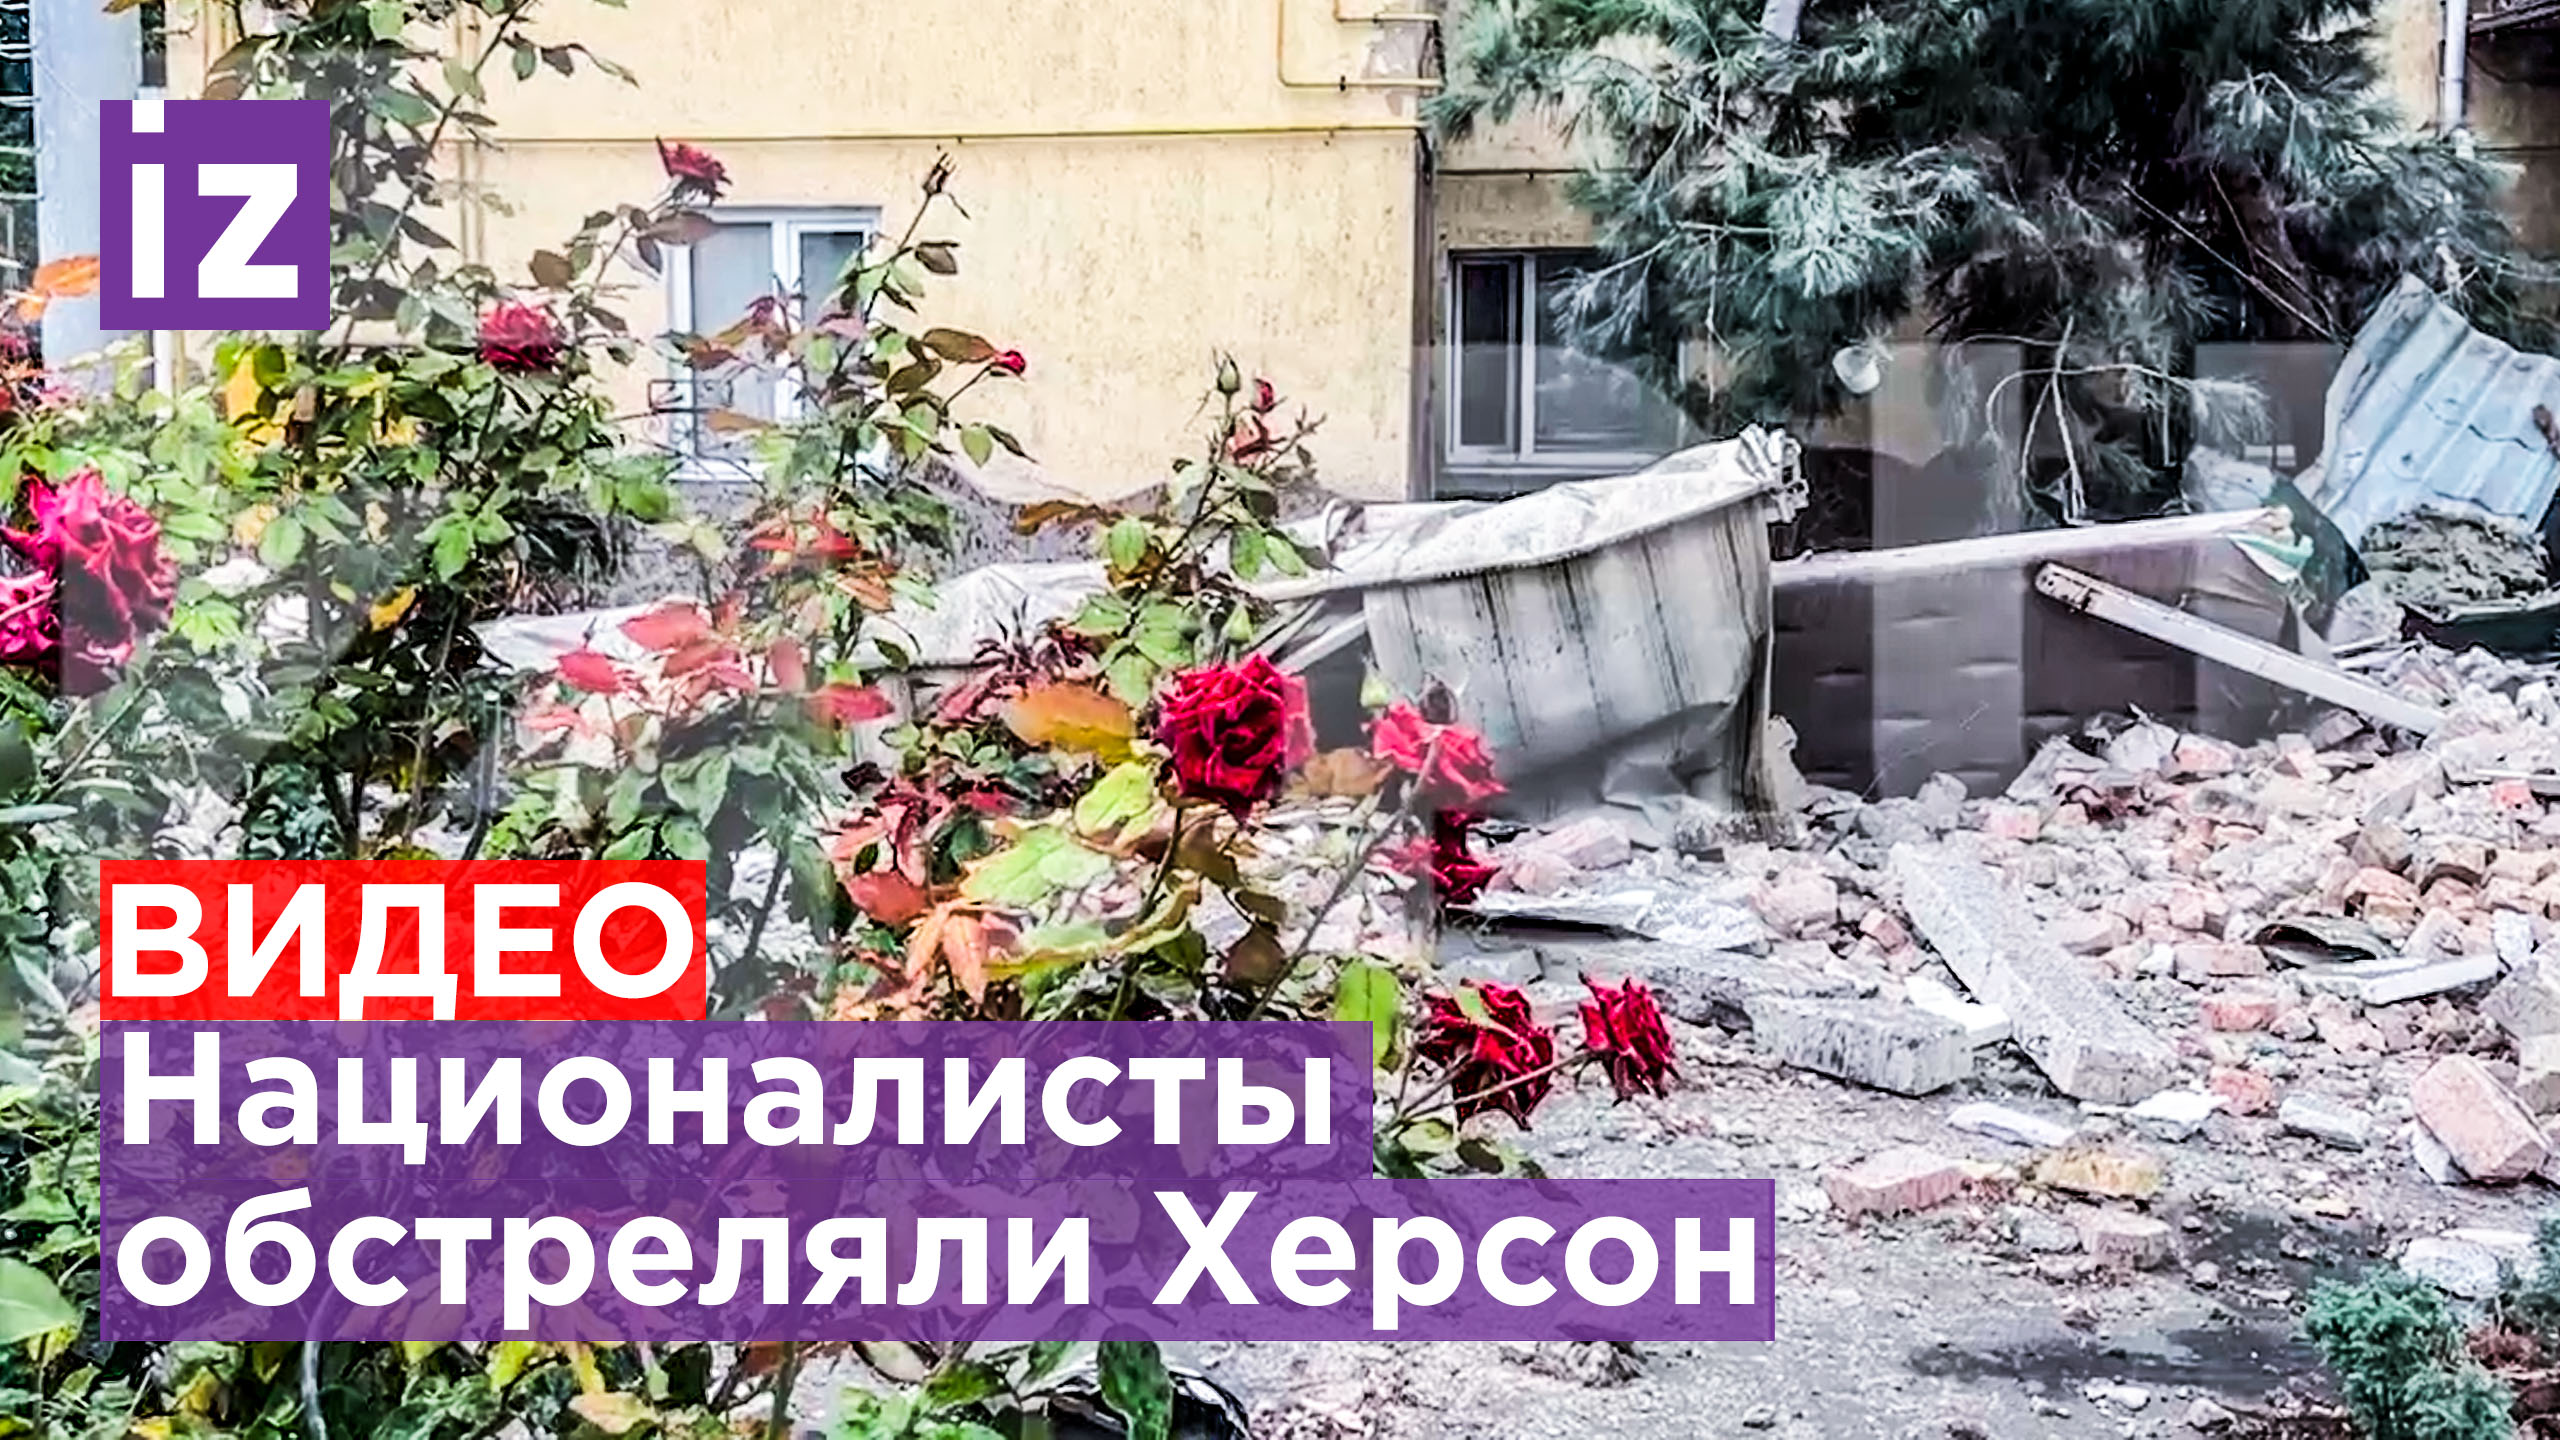 Украинские националисты нанесли удар по Херсону / Известия